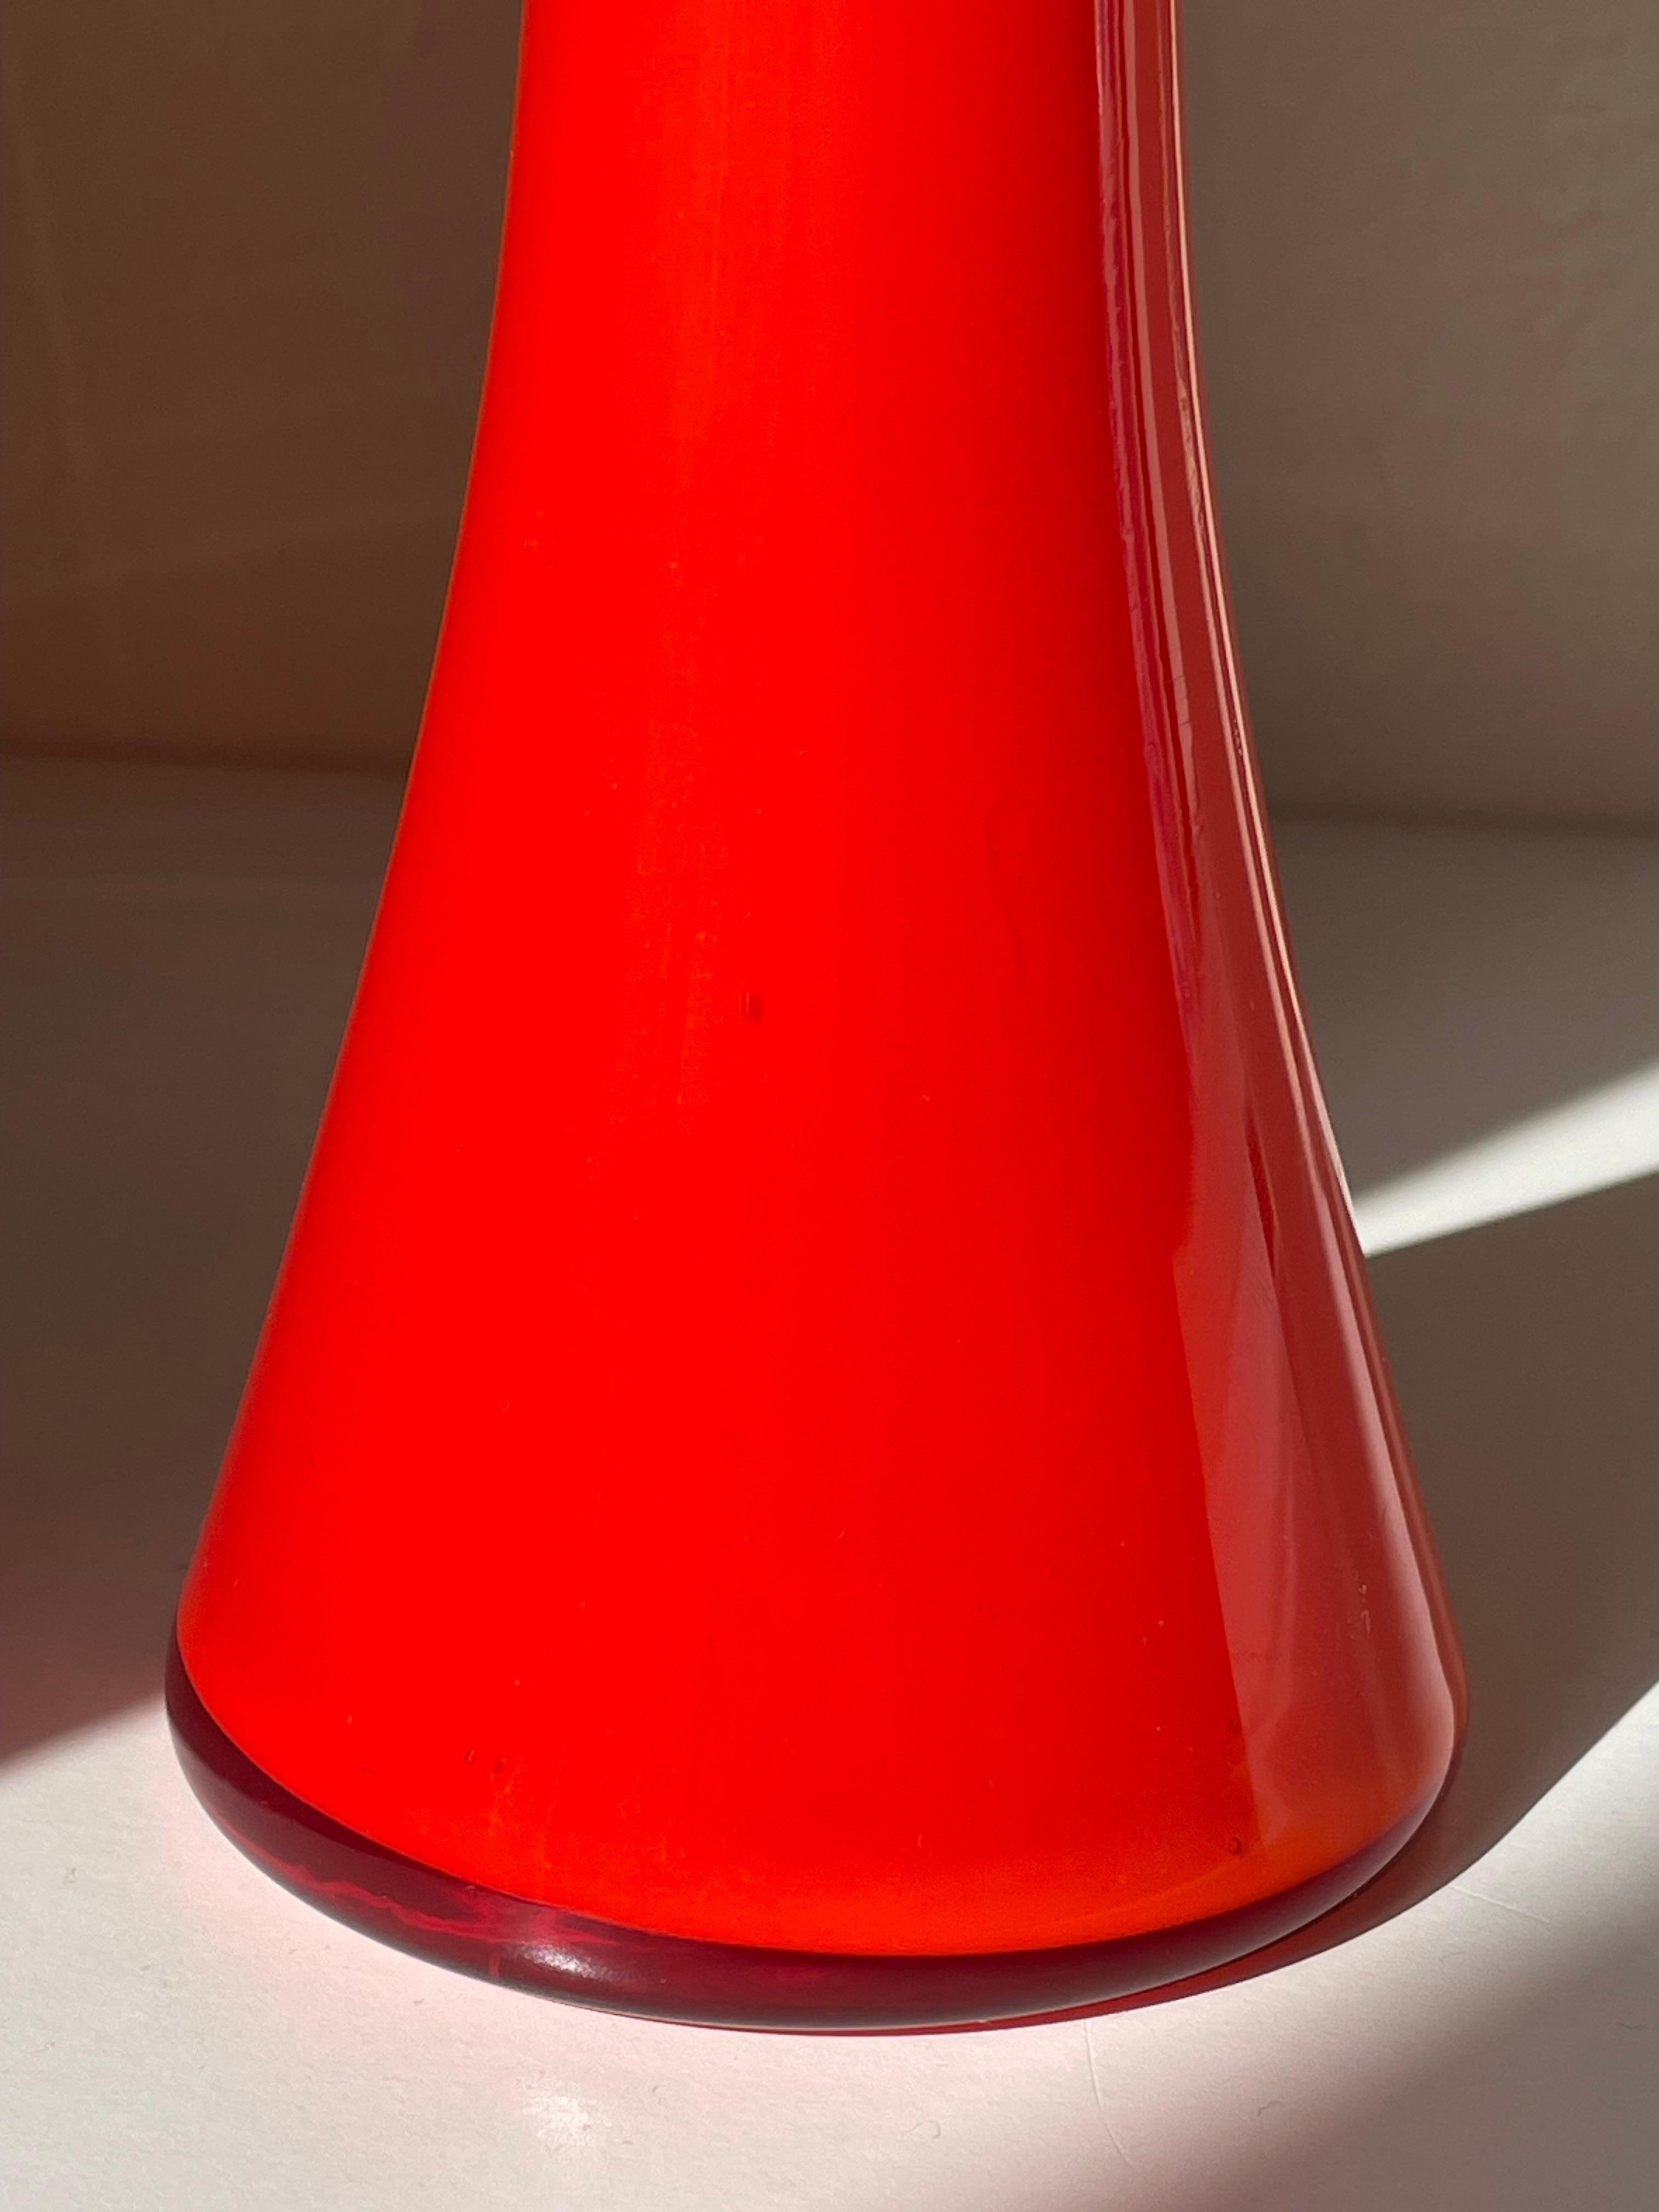 Holmegaard 1968 Red Pop Art Glass Vase with Globe, Denmark For Sale 6